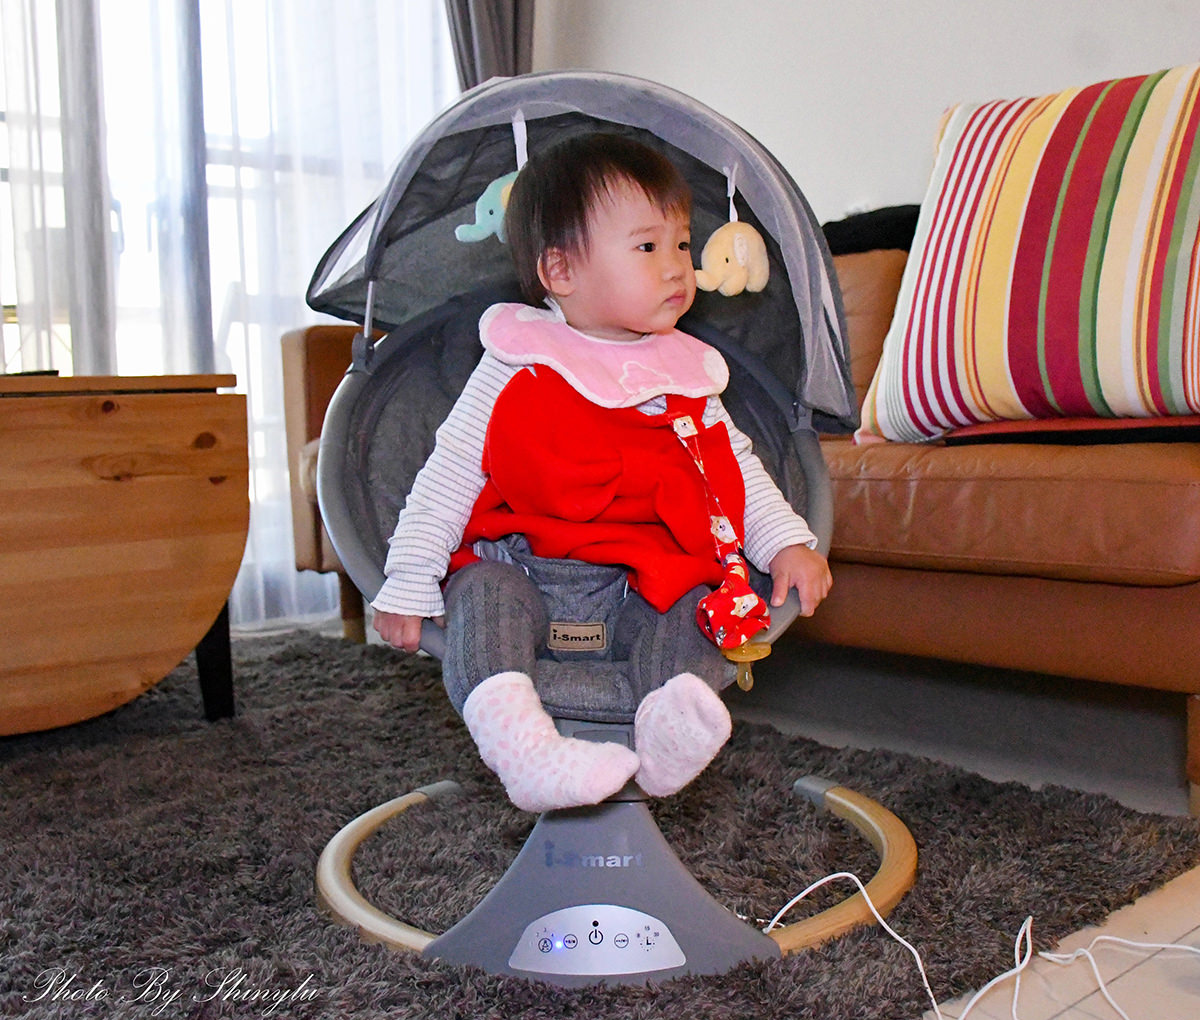 電動嬰兒搖椅推薦│i smart 多功能電動嬰兒安撫搖椅19